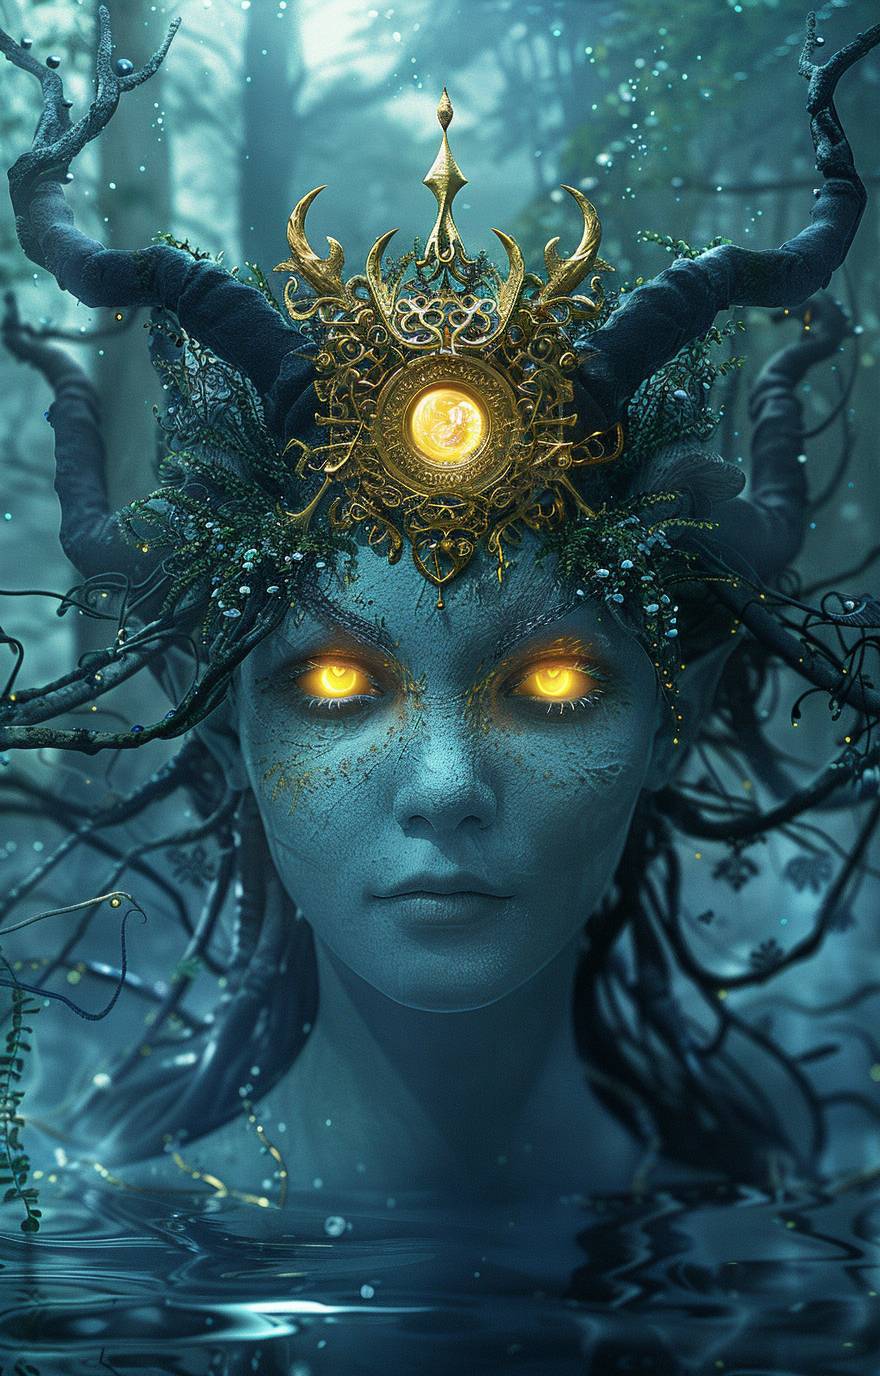 輝く黄色の目とつるのような髪を持つ青い宇宙人の女性が、頭の前で太陽のような形をした精巧な金の王冠を着用しています。彼女の額の両側には小さな黒い角が2つあり、デジタルアートスタイルで水の下に立ち、背後に木々が見えています。